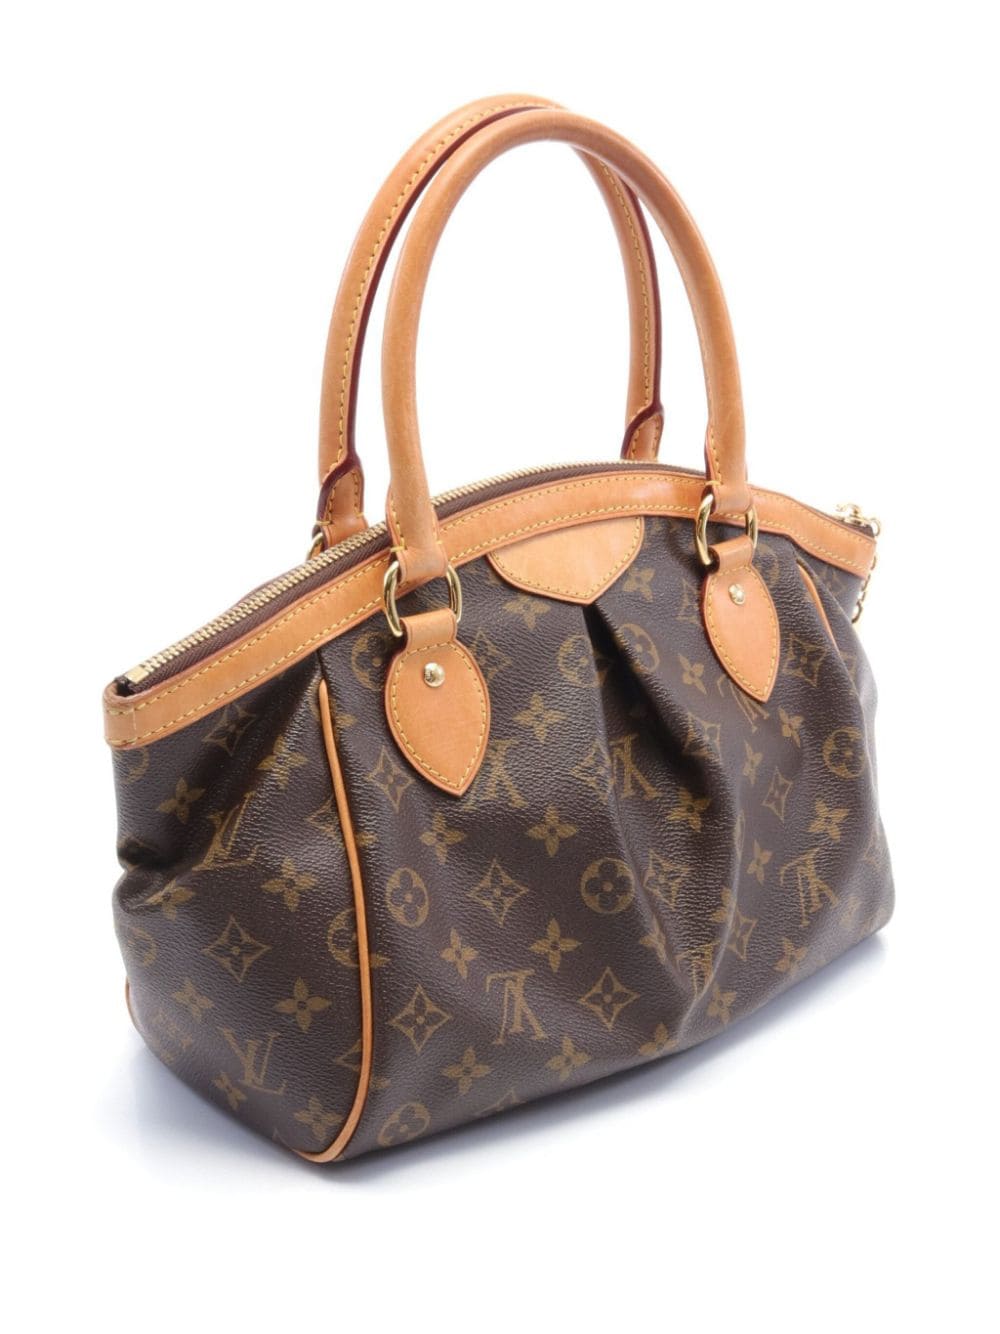 Louis Vuitton Pre-Owned 2013 Tivoli PM handbag - Bruin